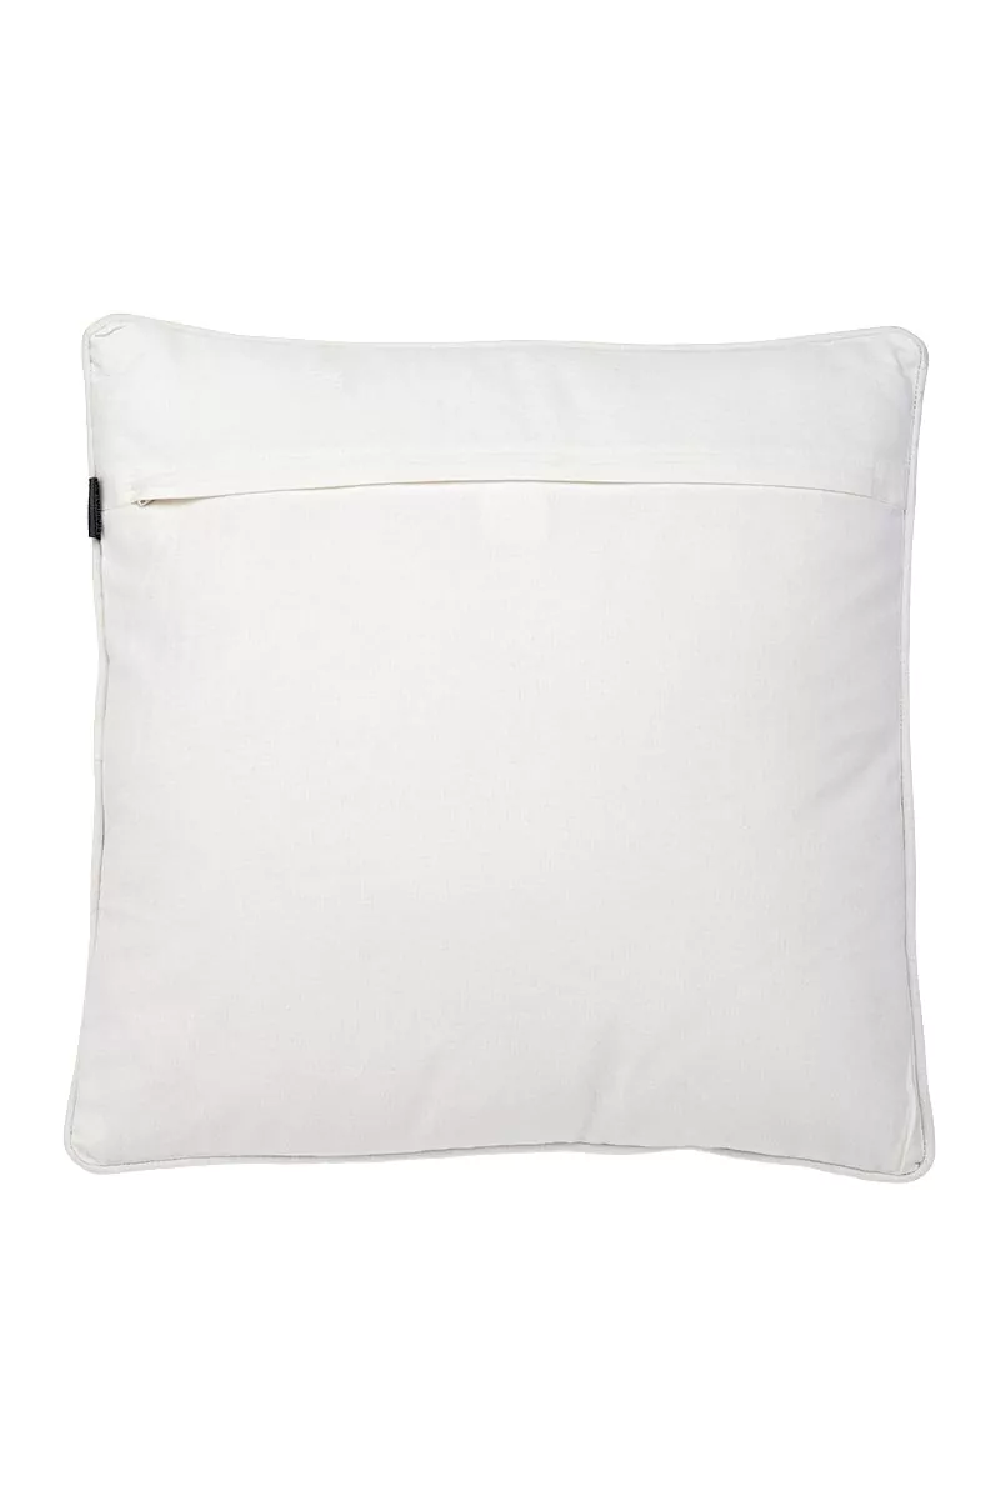 Orange and White Pillow | Eichholtz Bradburry | Oroa.com